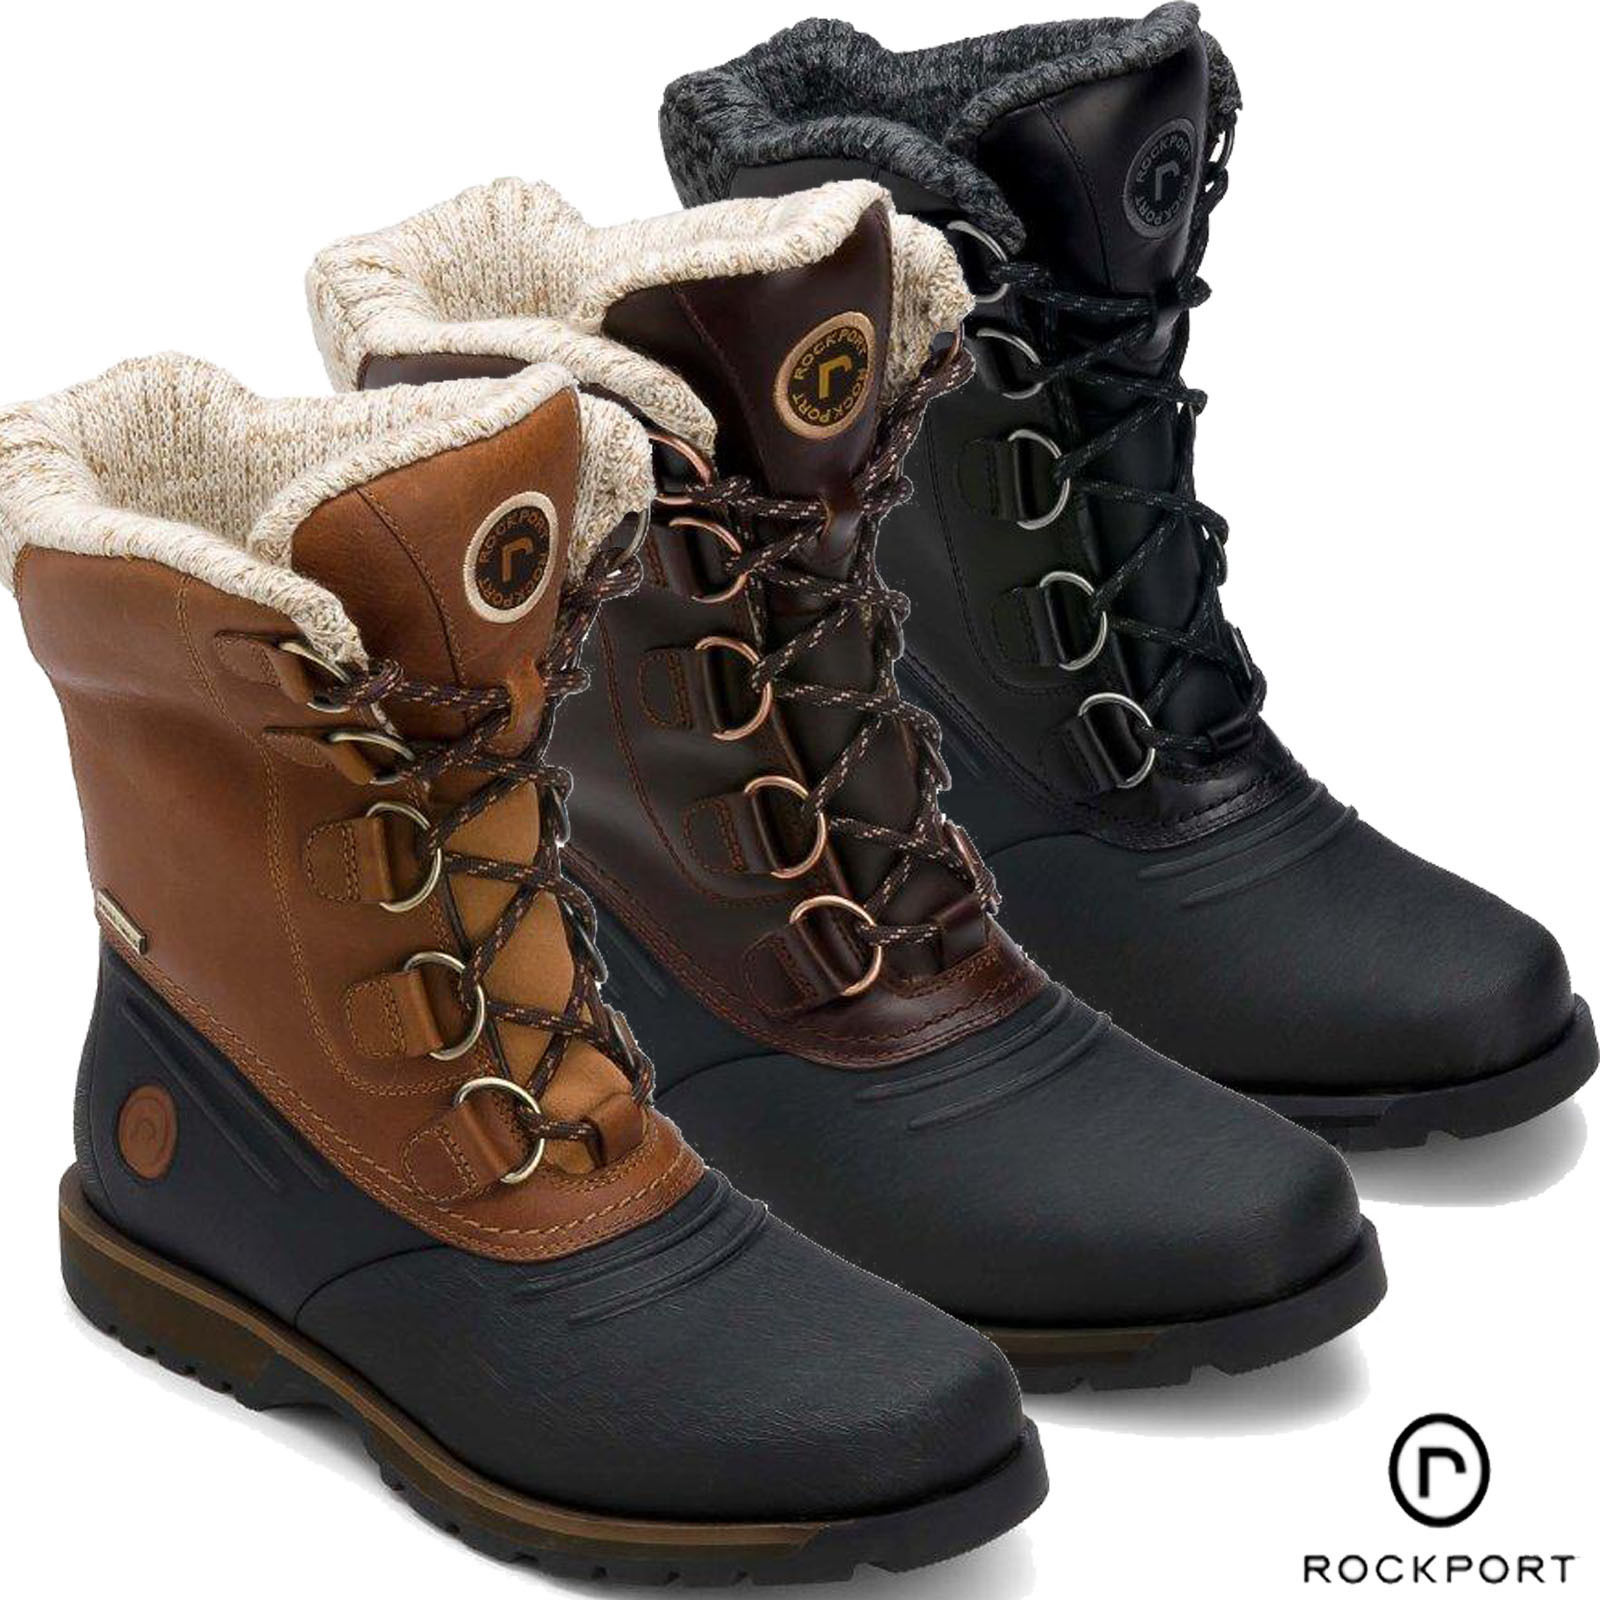 Stylish winter boots